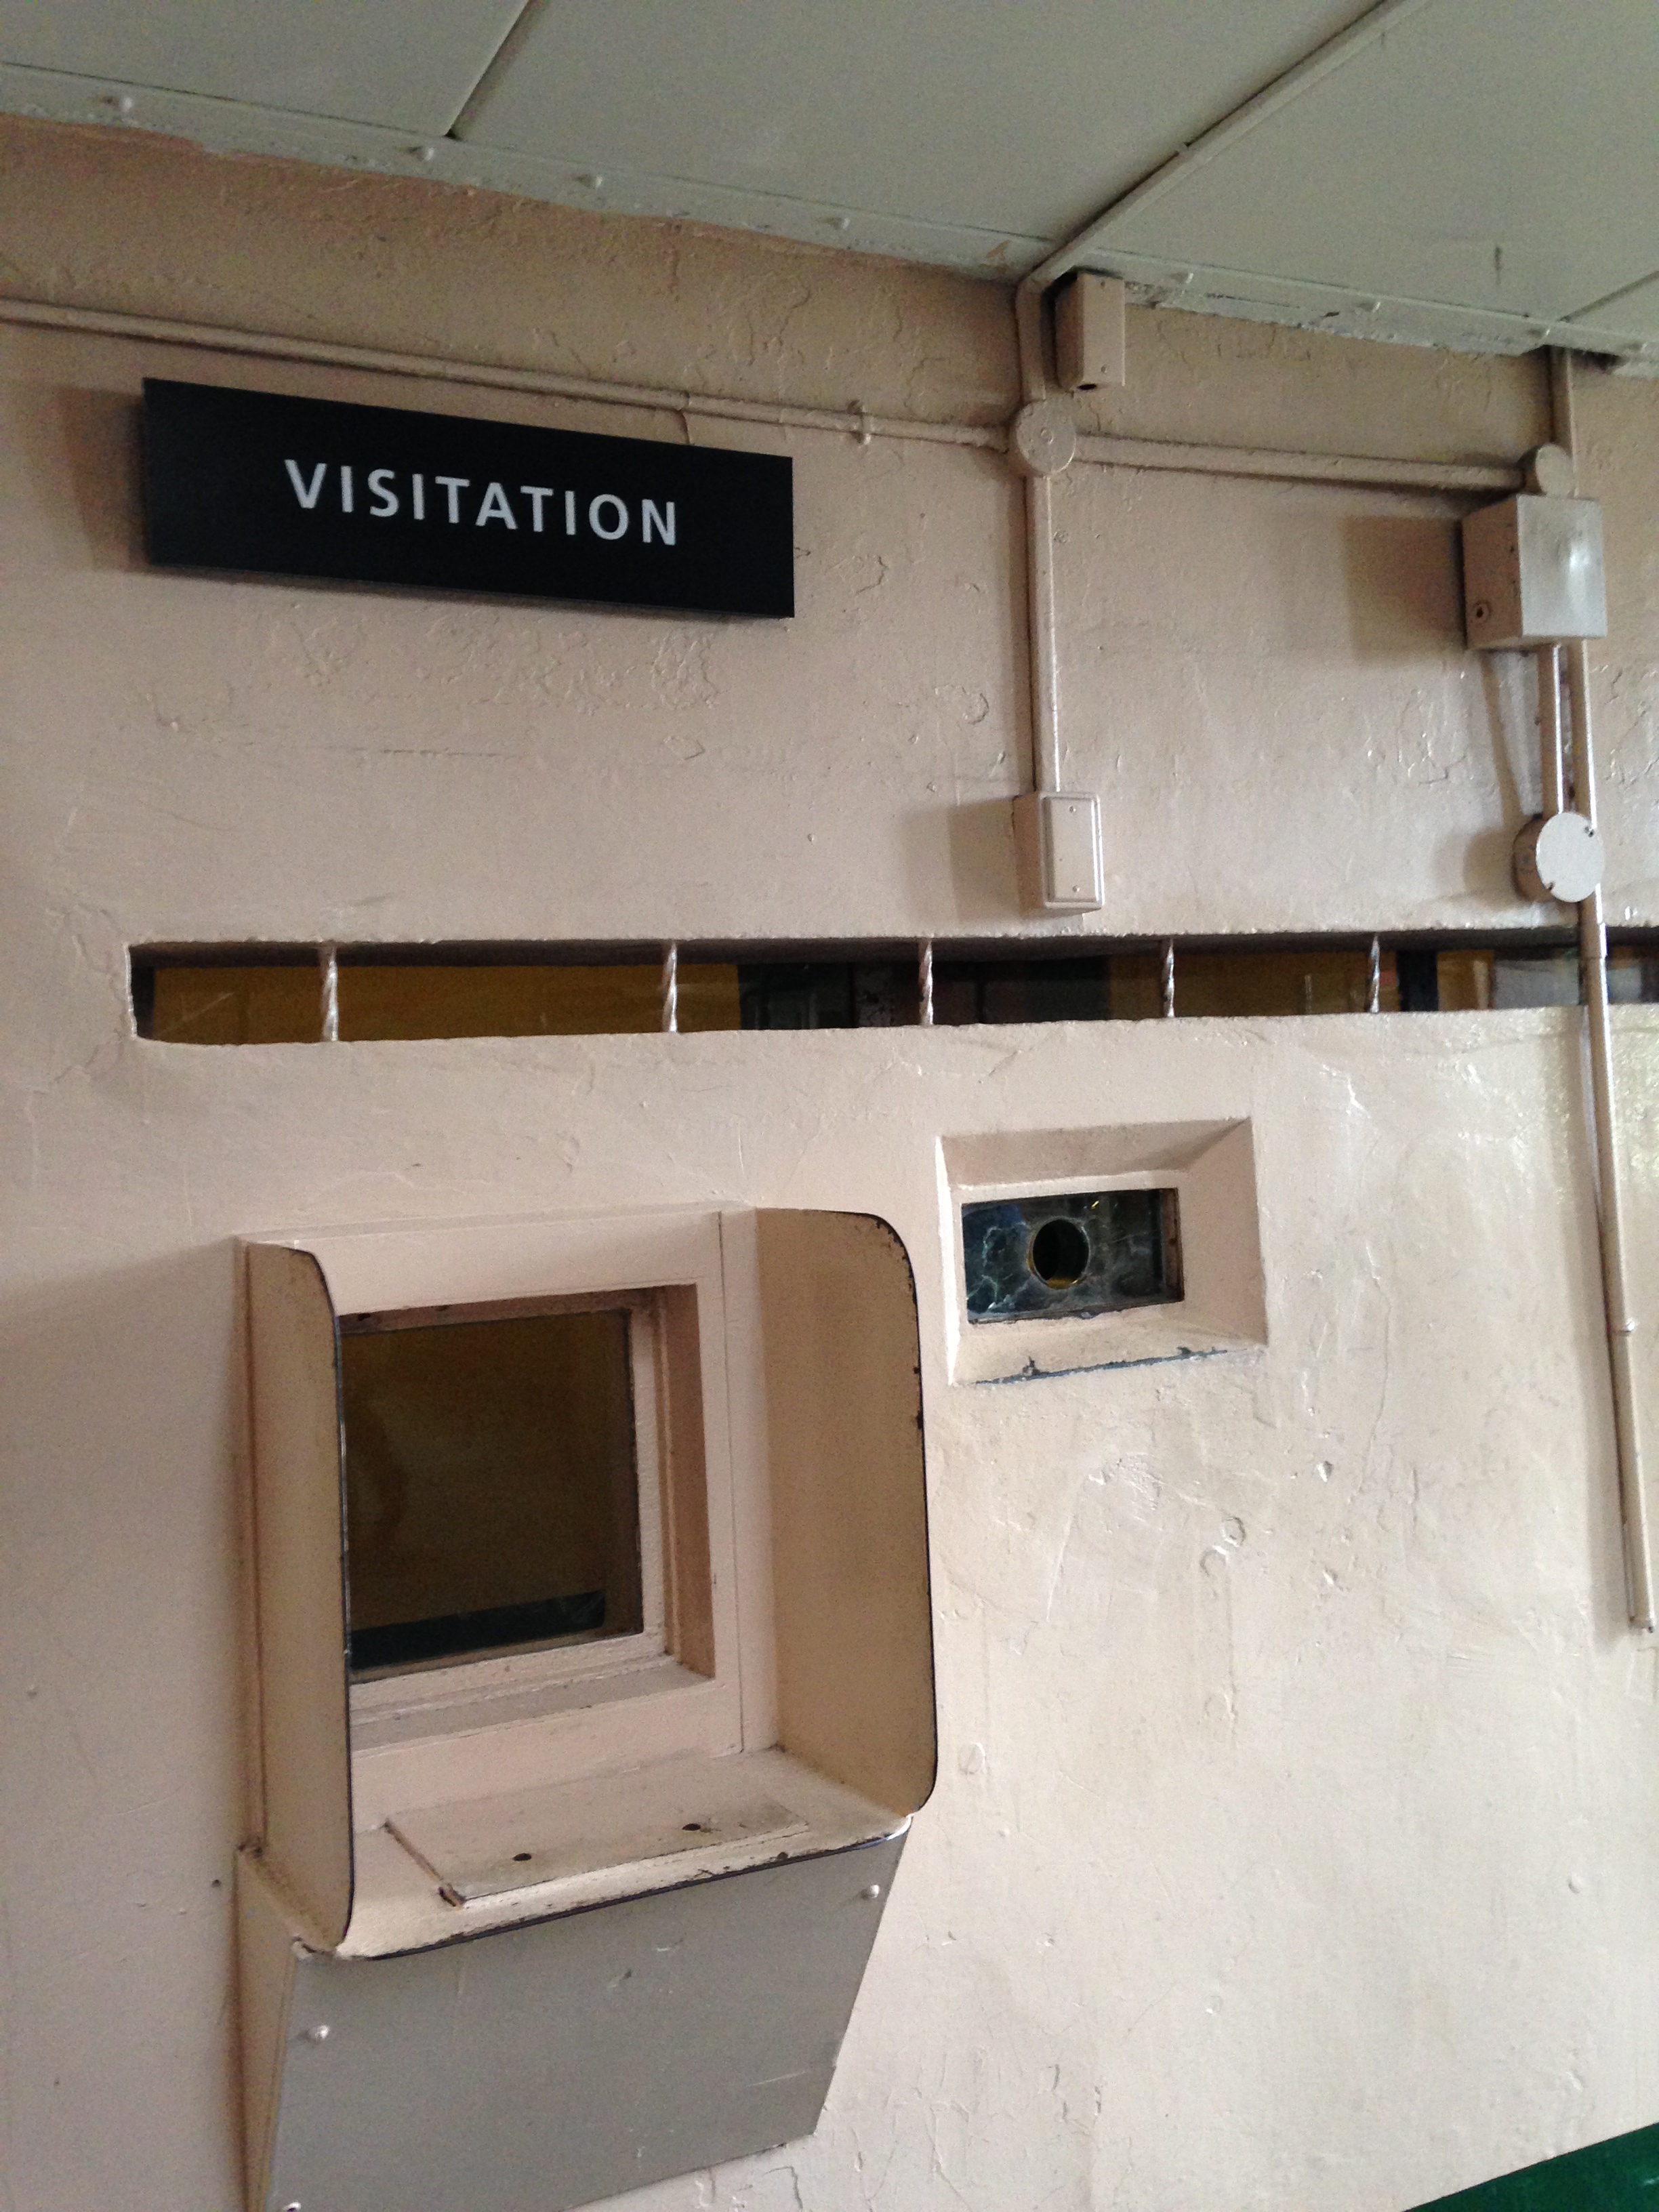 20140426 231909578 ios - Una visita a la Cárcel de Alcatraz